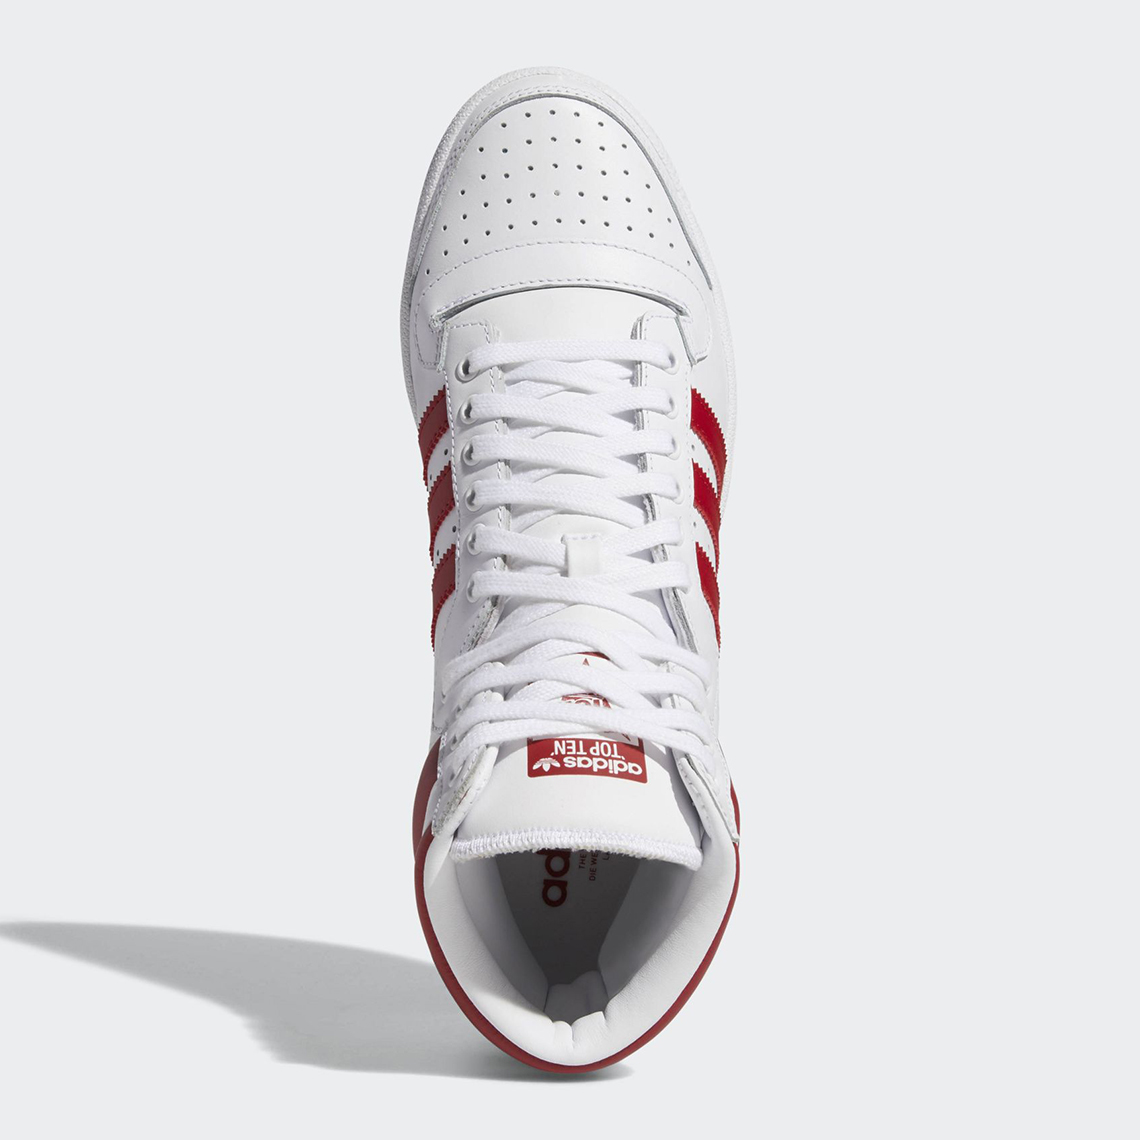 adidas printable Top Ten Hi White Red Ef2359 5